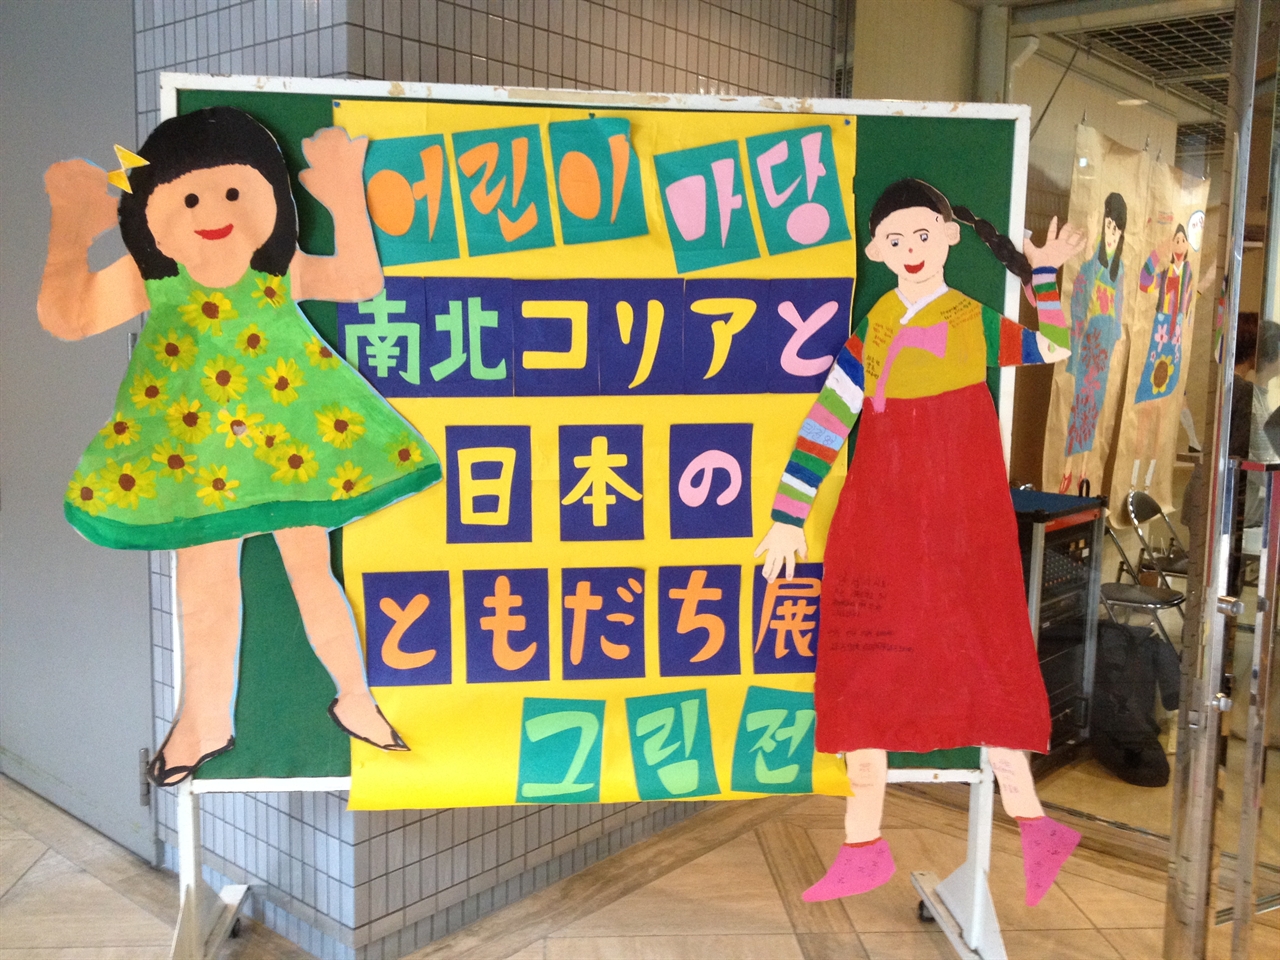 2015 남북코리아와 일본의 친구 그림전(오사카 전시회) 입구. 아이들의 전신 그림이 관람객을 환하게 맞이하고 있다.